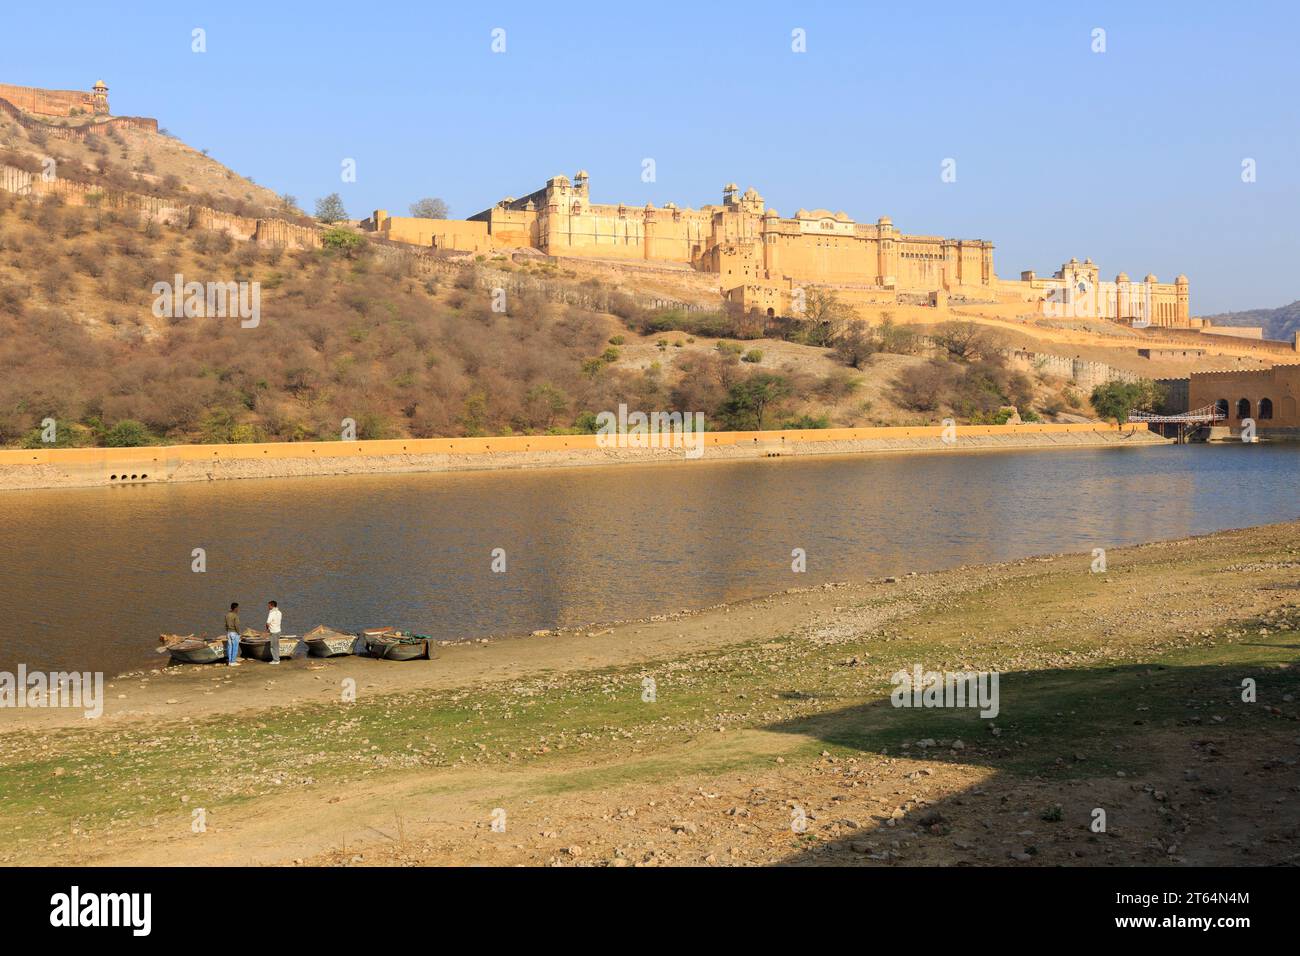 Festung von Amber, Amber Fort, Jaipur, Rajasthan, Indien Stock Photo